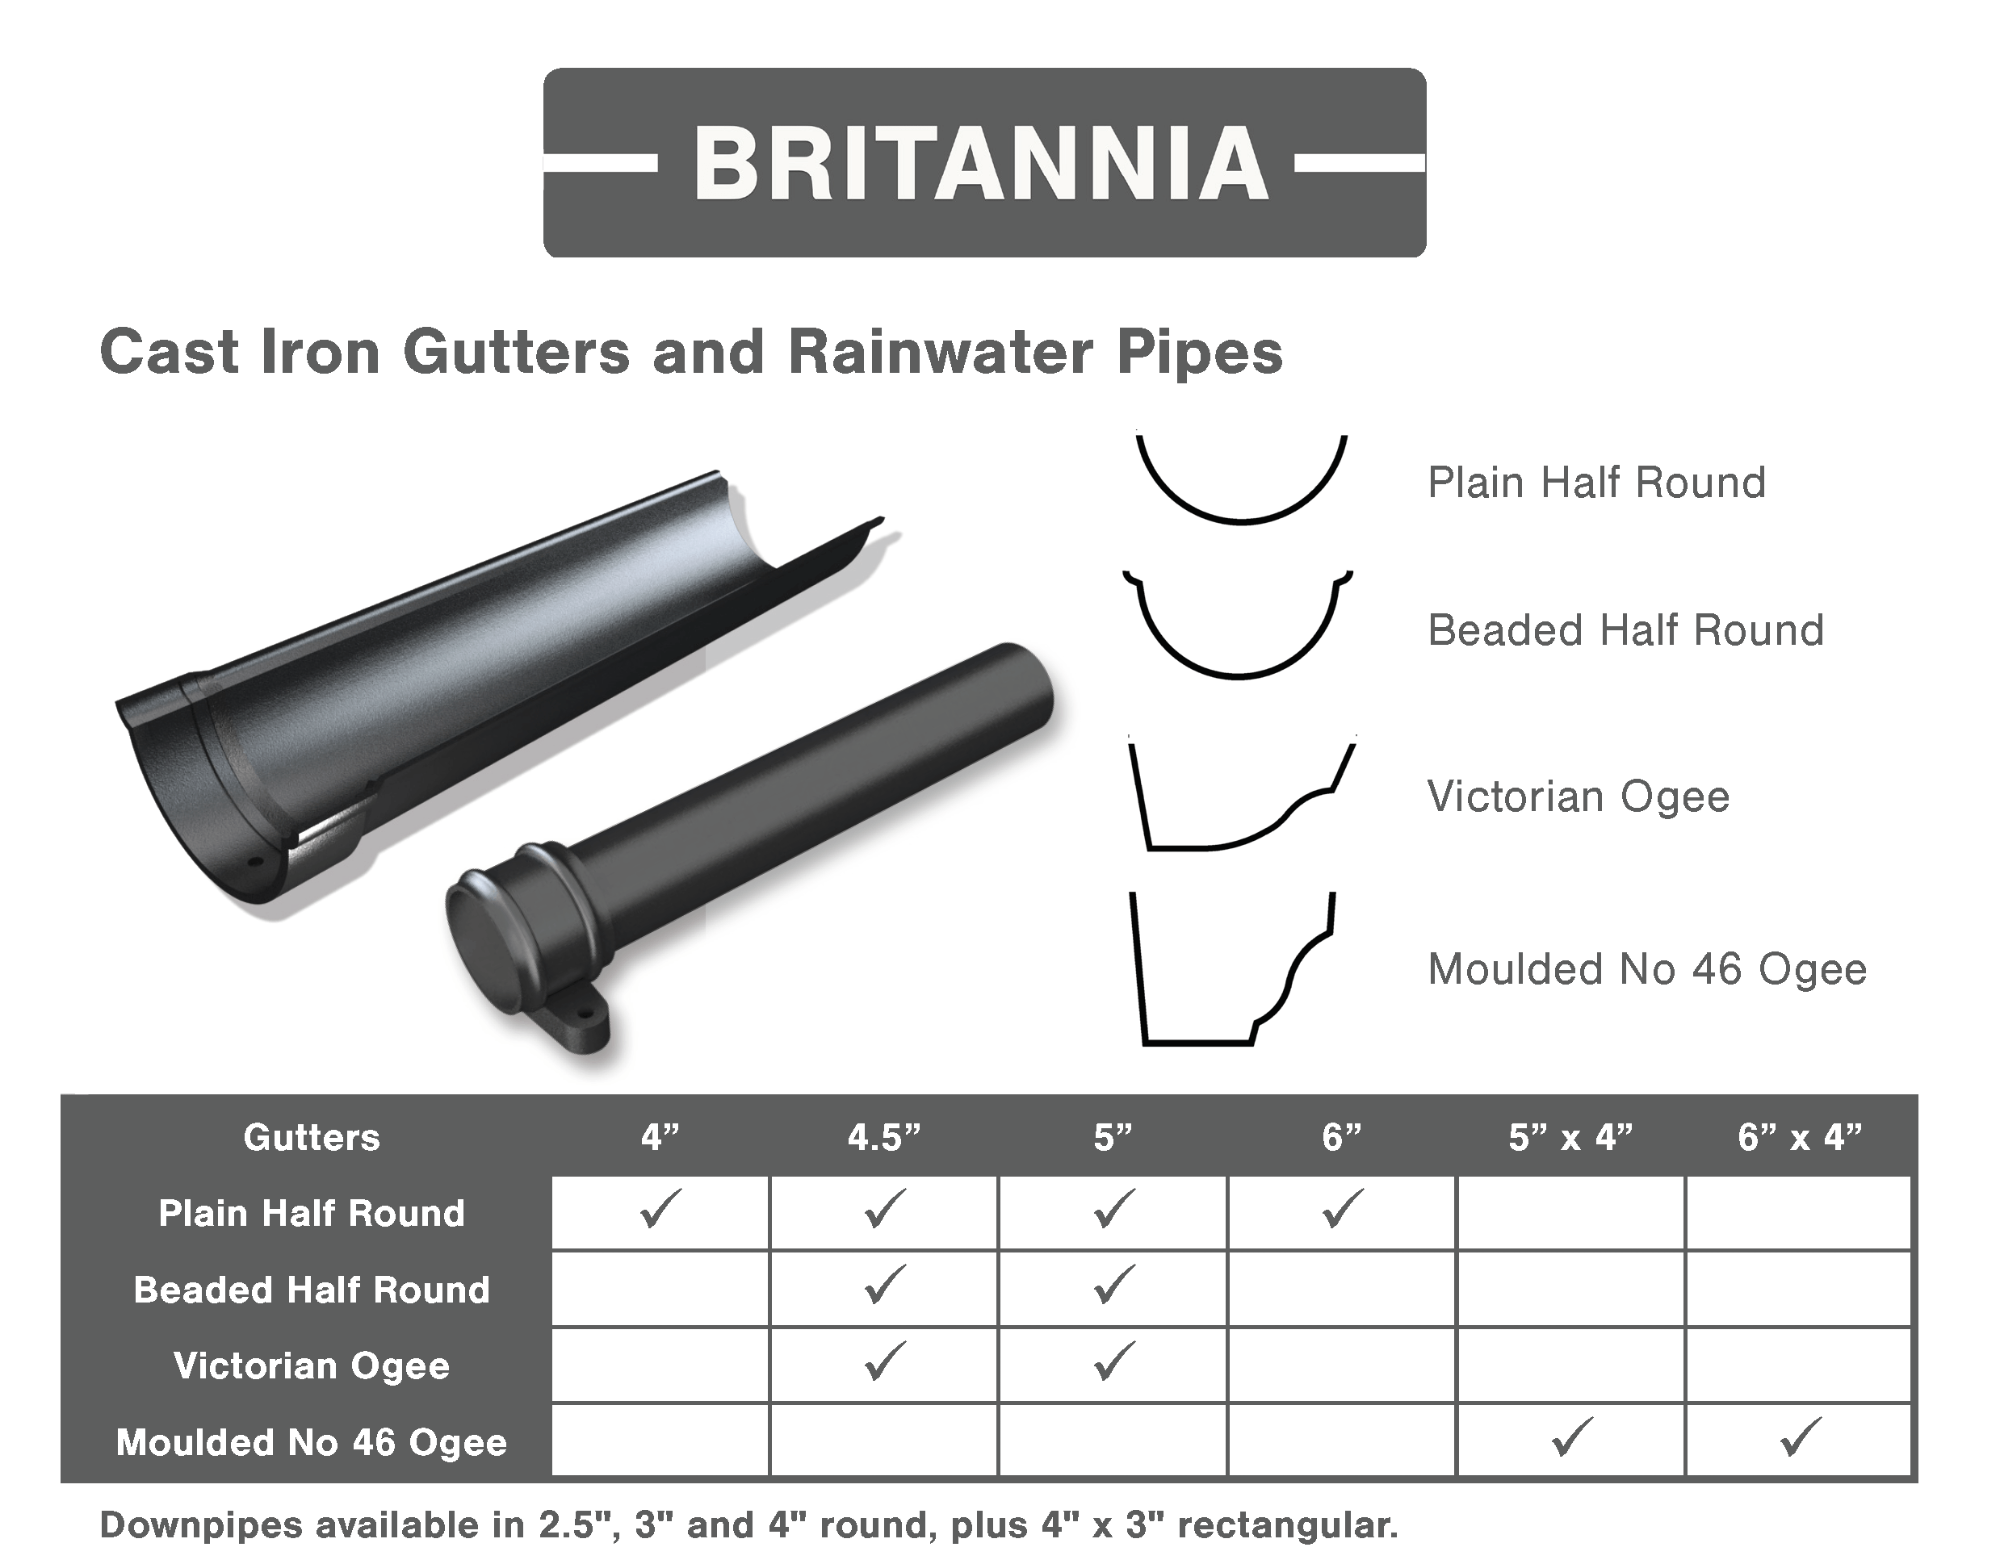 Britannia cast iron gutters from Gutters Online